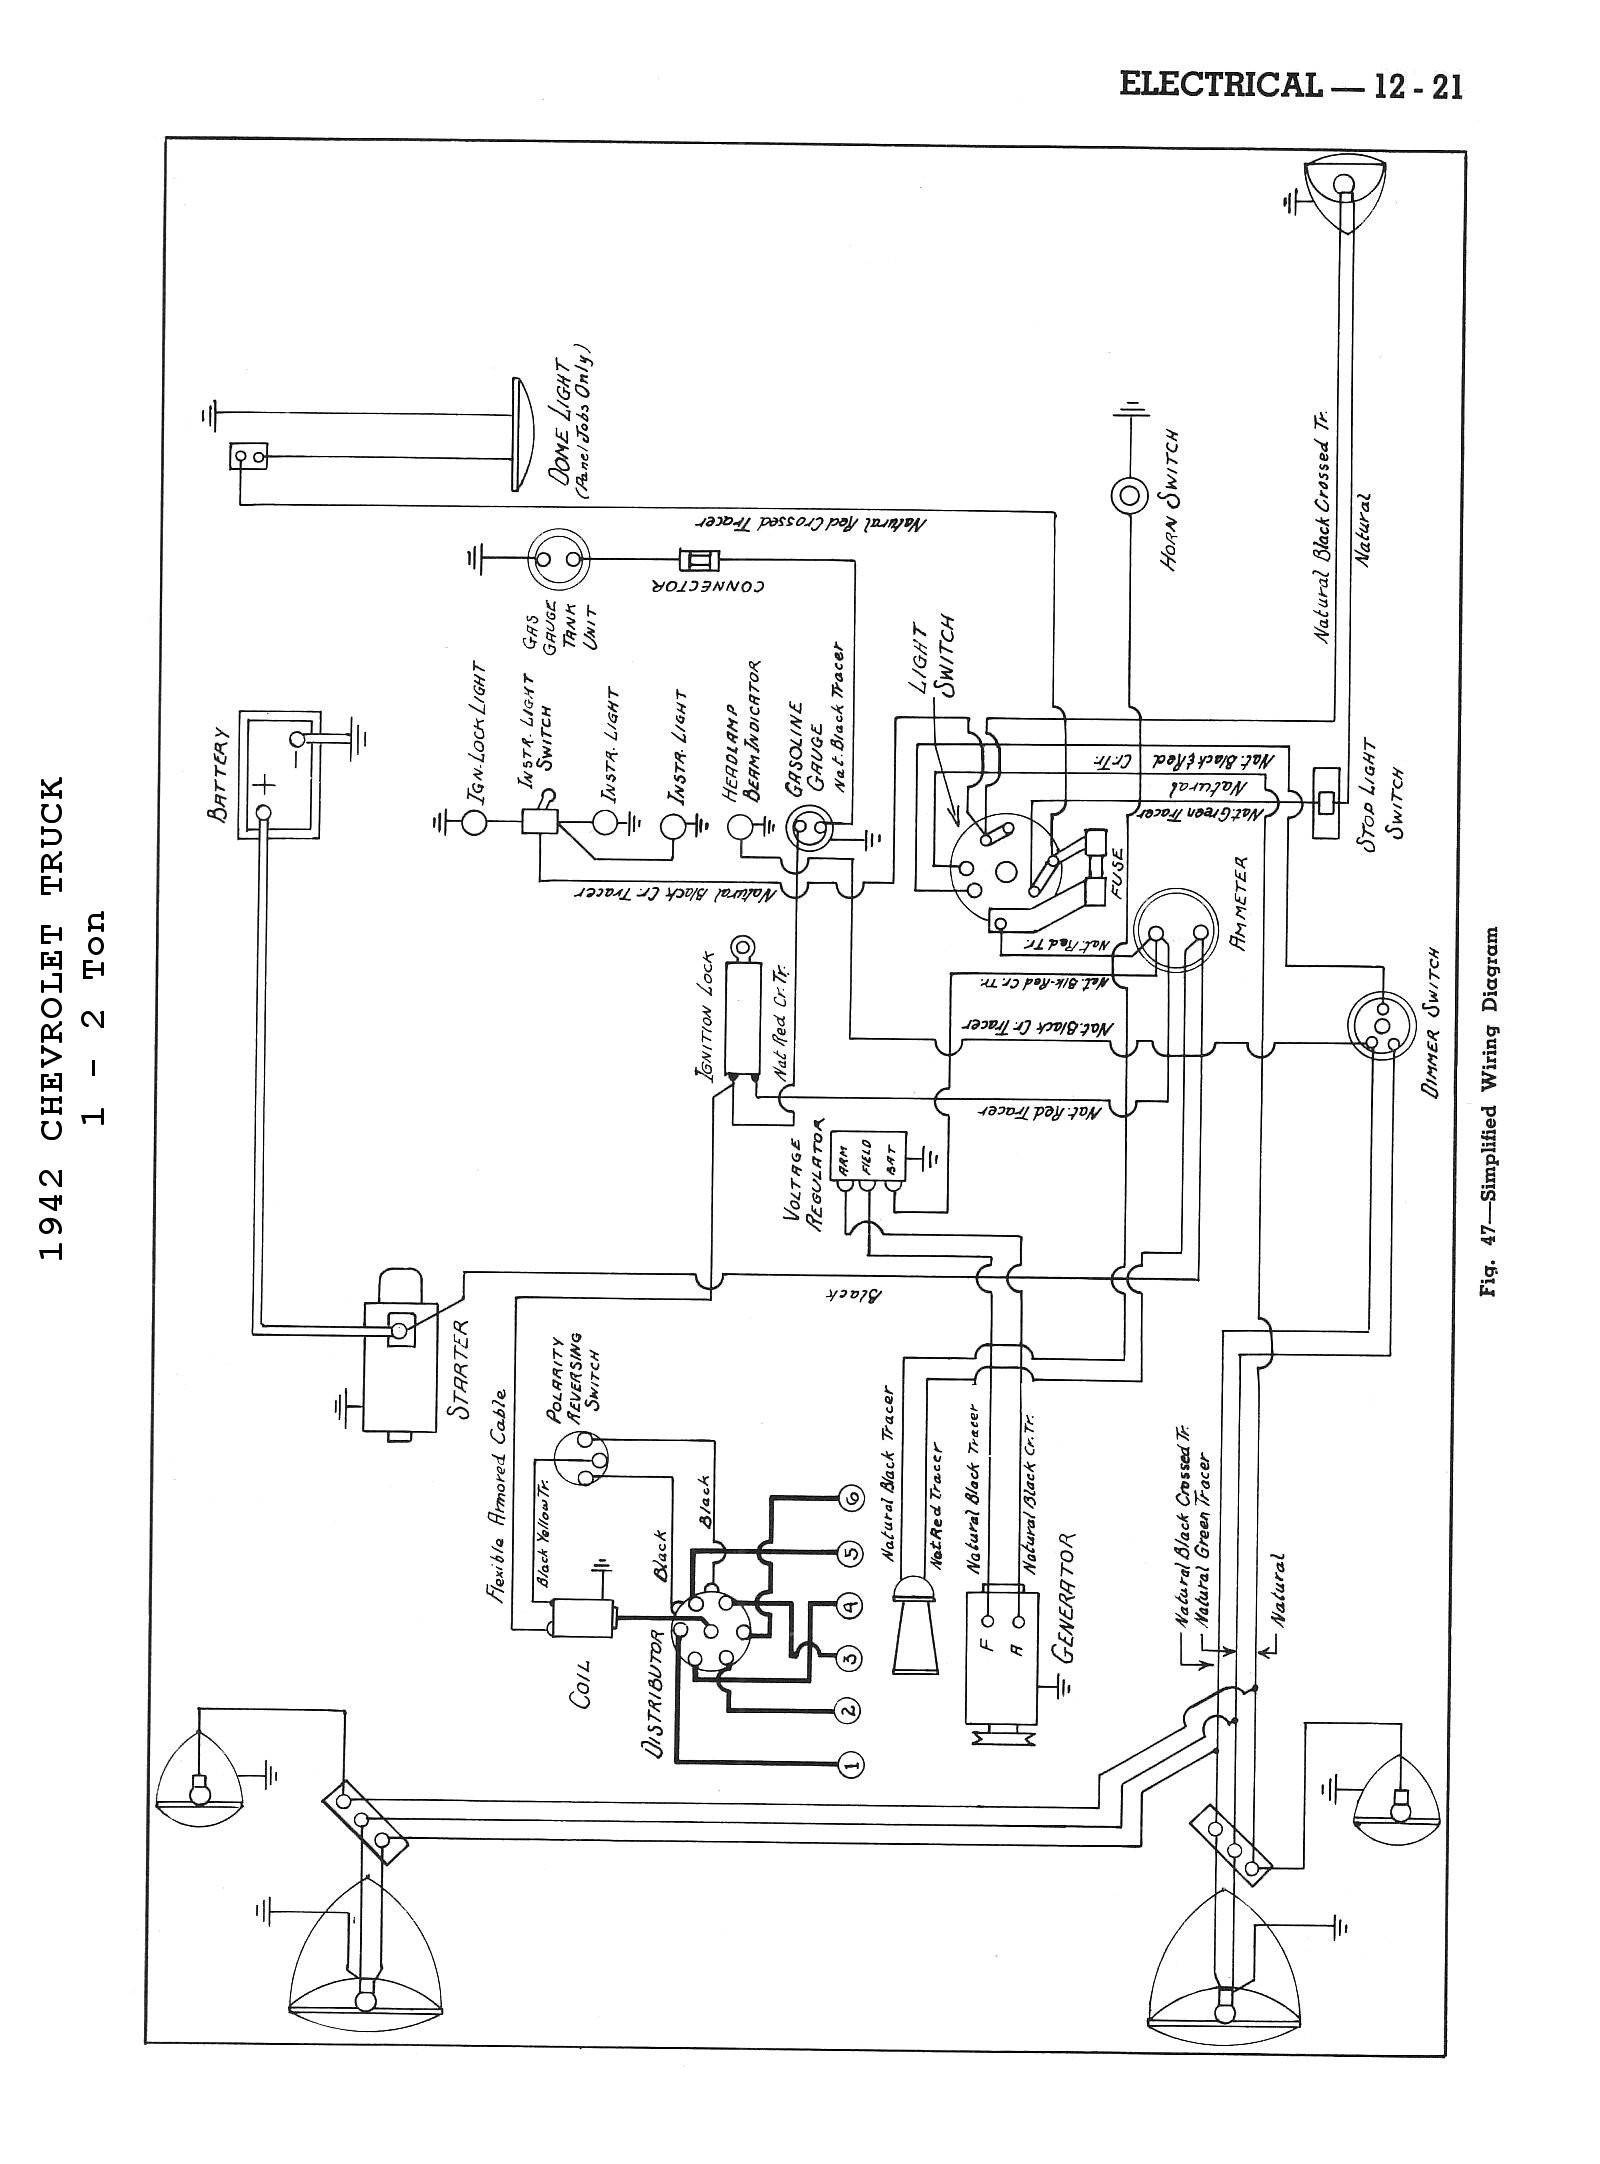 Turn Signal Wiring Diagram Best Chevy Wiring Diagrams Turn Signal Wiring Diagram Lovely Jcb